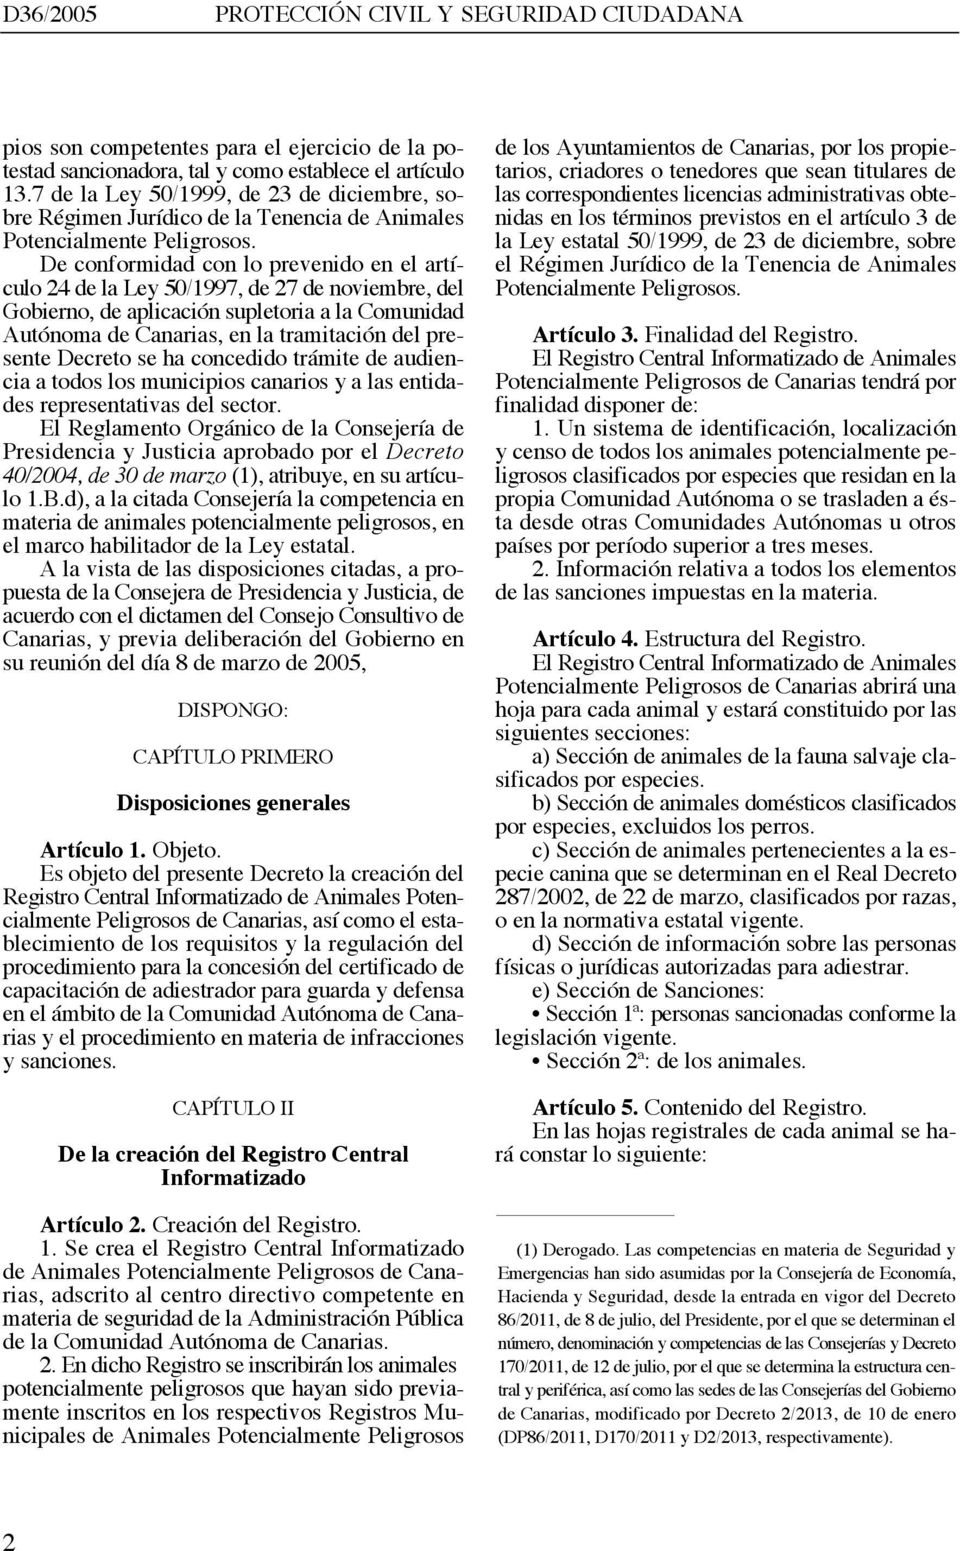 De conformidad con lo prevenido en el artículo 24 de la Ley 50/1997, de 27 de noviembre, del Gobierno, de aplicación supletoria a la Comunidad Autónoma de Canarias, en la tramitación del presente